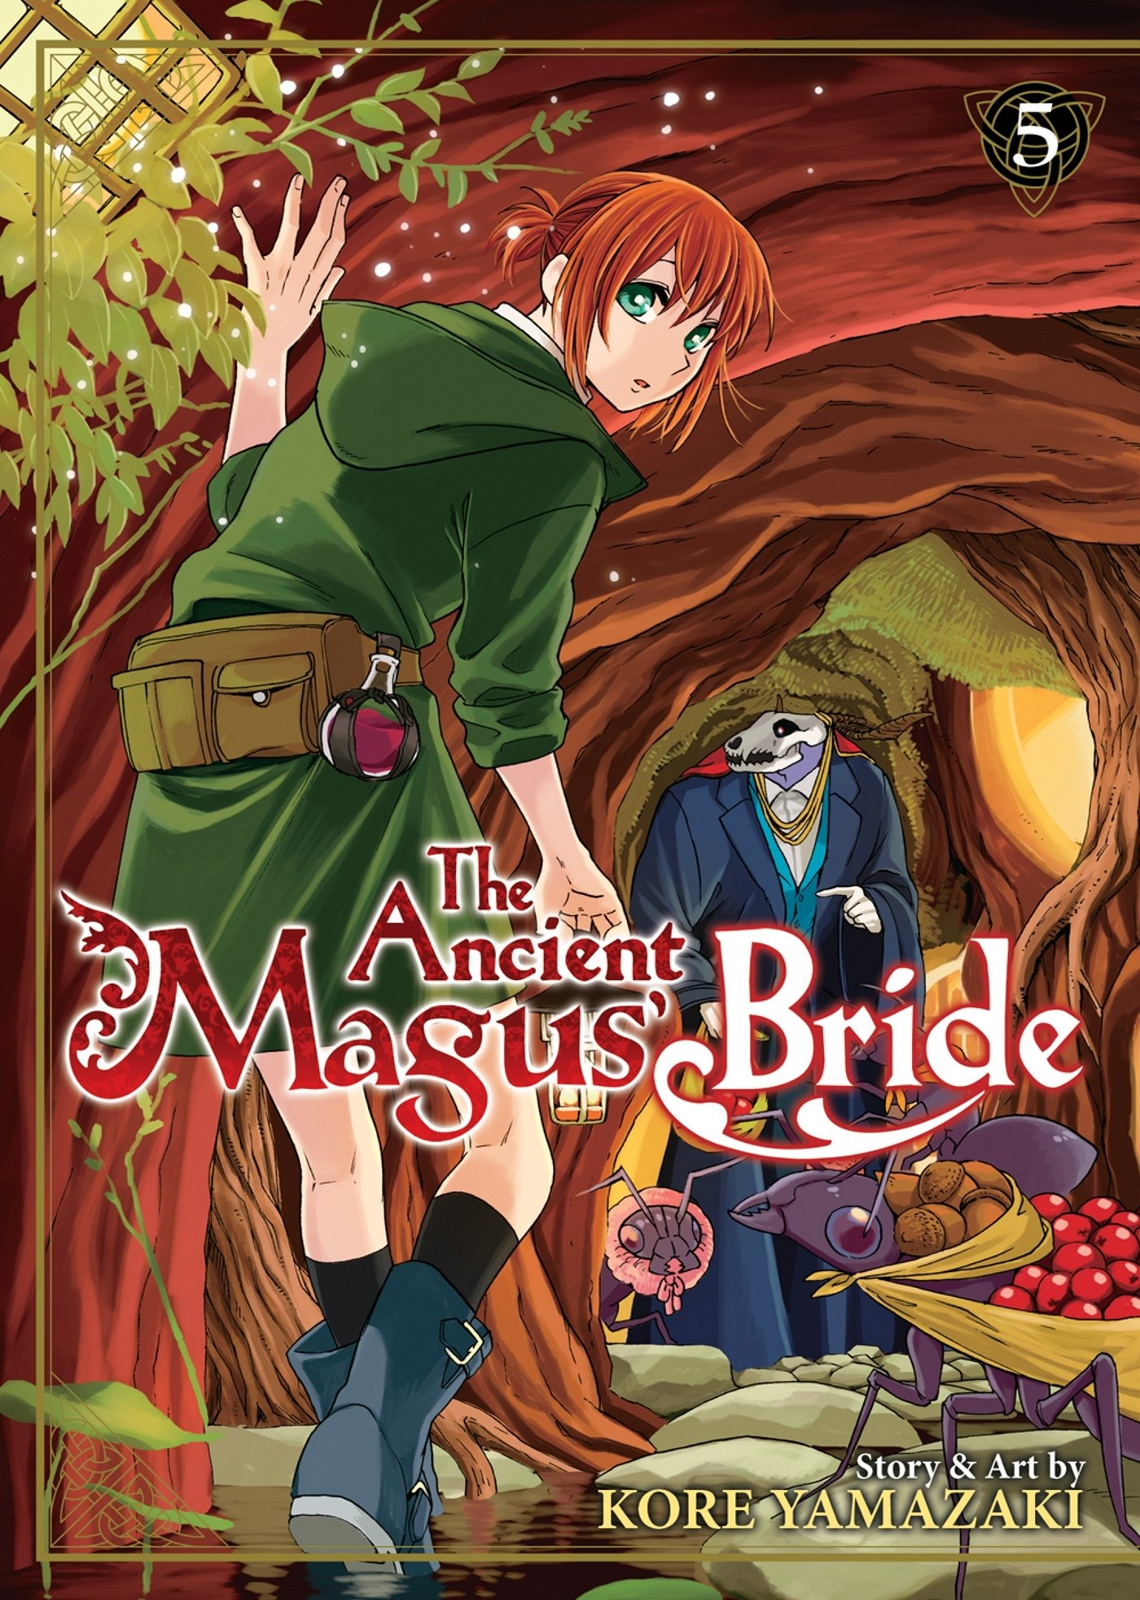 Mahoutsukai no Yome(The Ancient Magus Bride) - Por capítulo - MangAnime -  Download baixar Mangás e HQs em Kindle .mobi e outros formatos .pdf mangás  para kindle